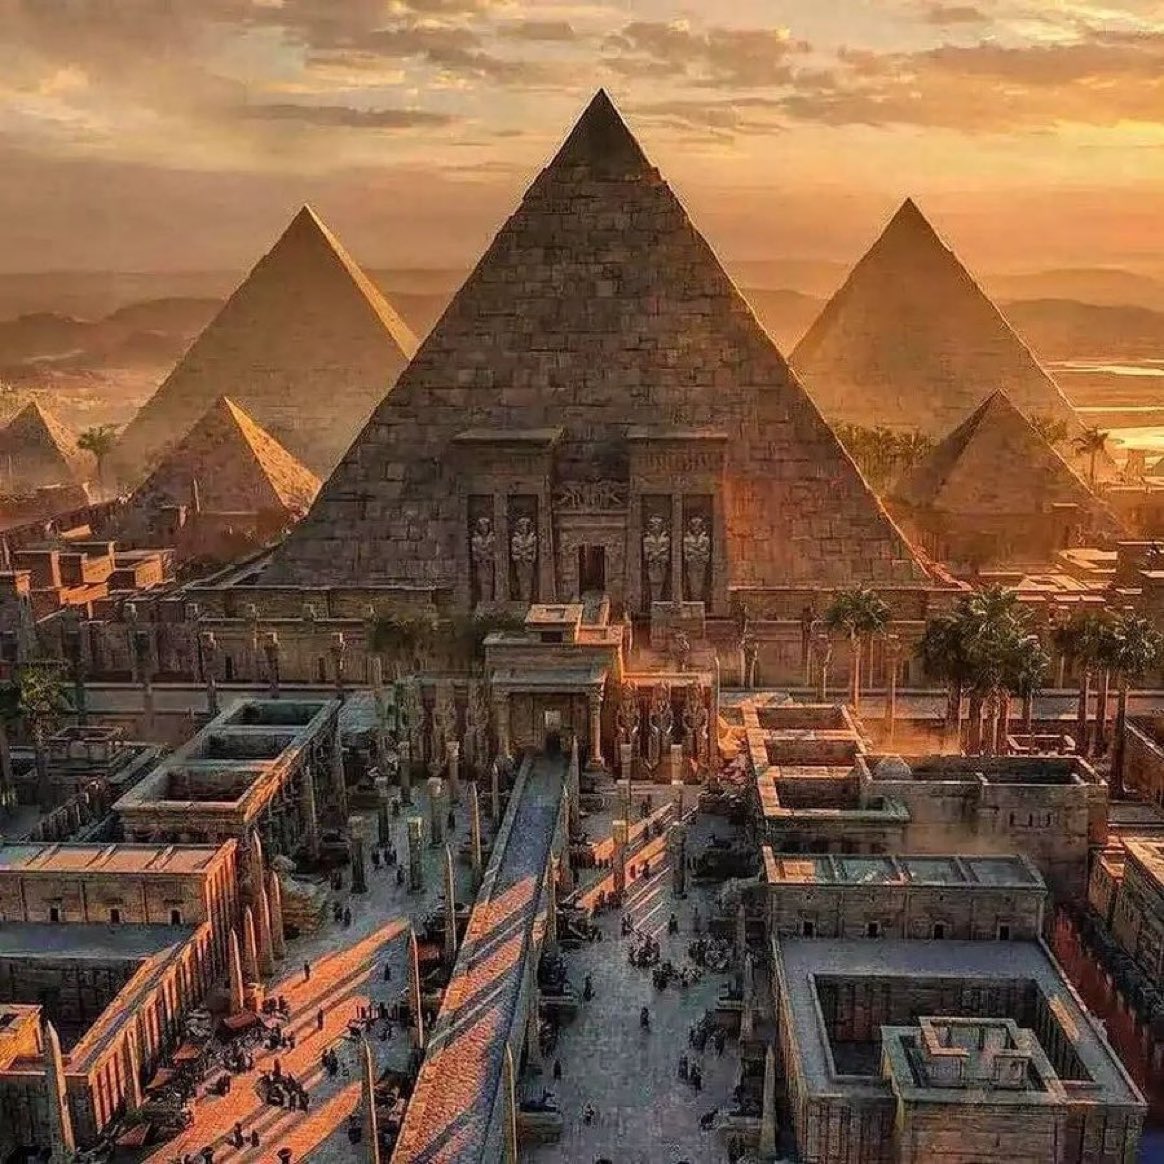 Sunset in Egypt.